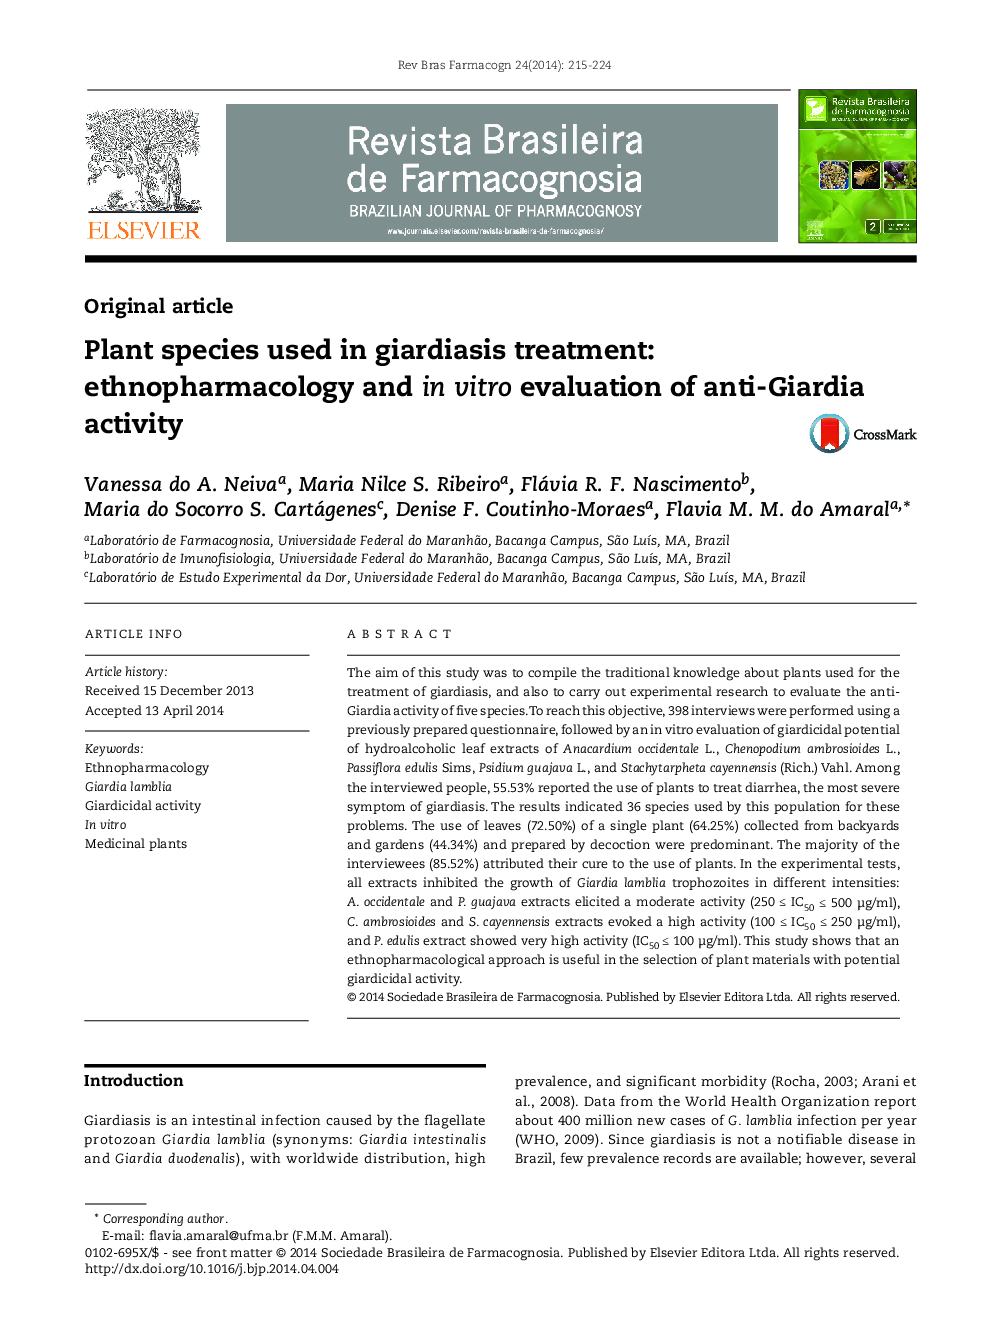 گونه های گیاهی مورد استفاده در درمان ژیاردیا: قارچ شناسی و ارزیابی فعالیت ضد جیریا در آزمایشگاهی 